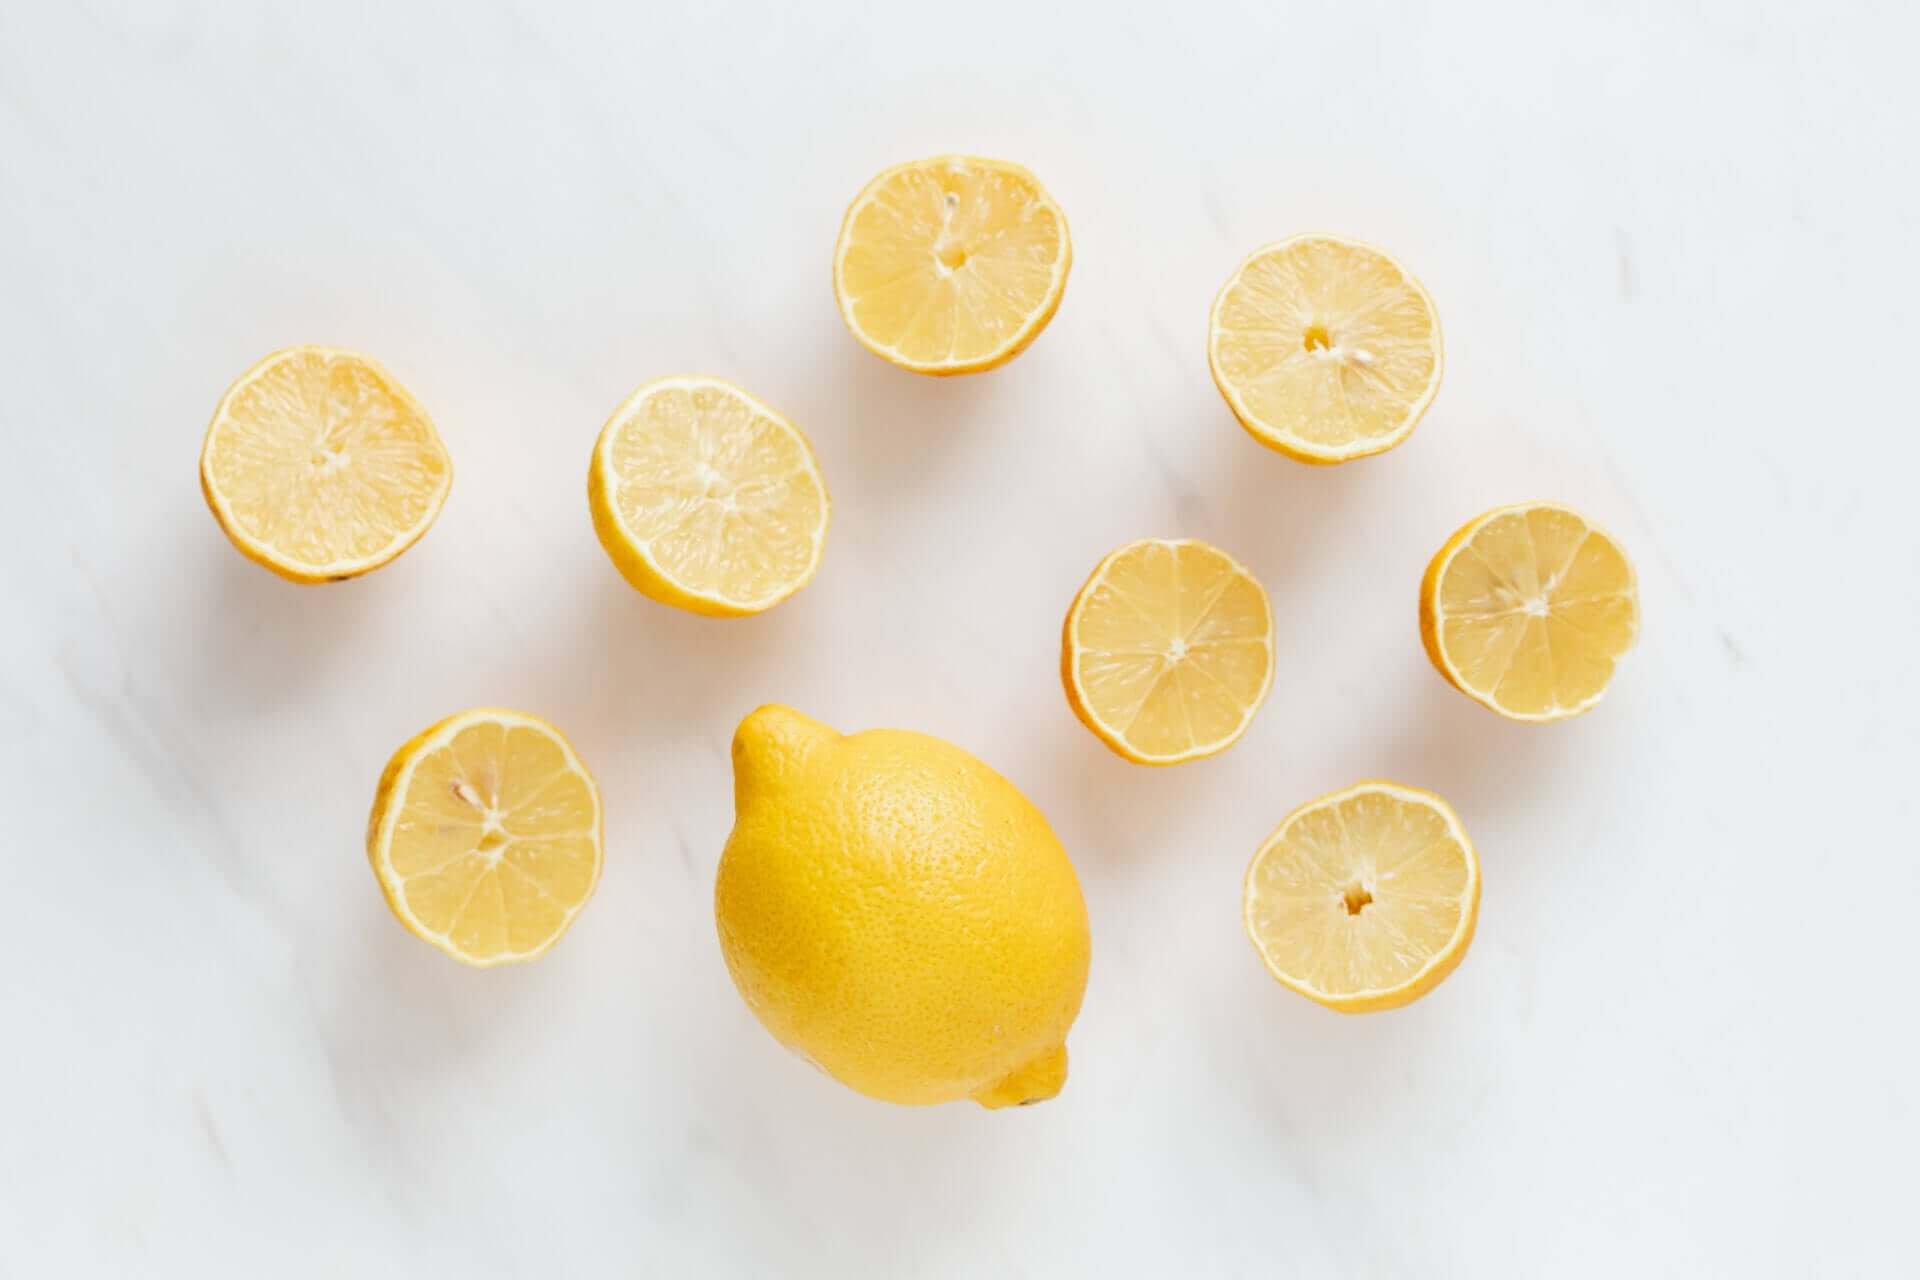 A lemon surrounded by lemon halves.